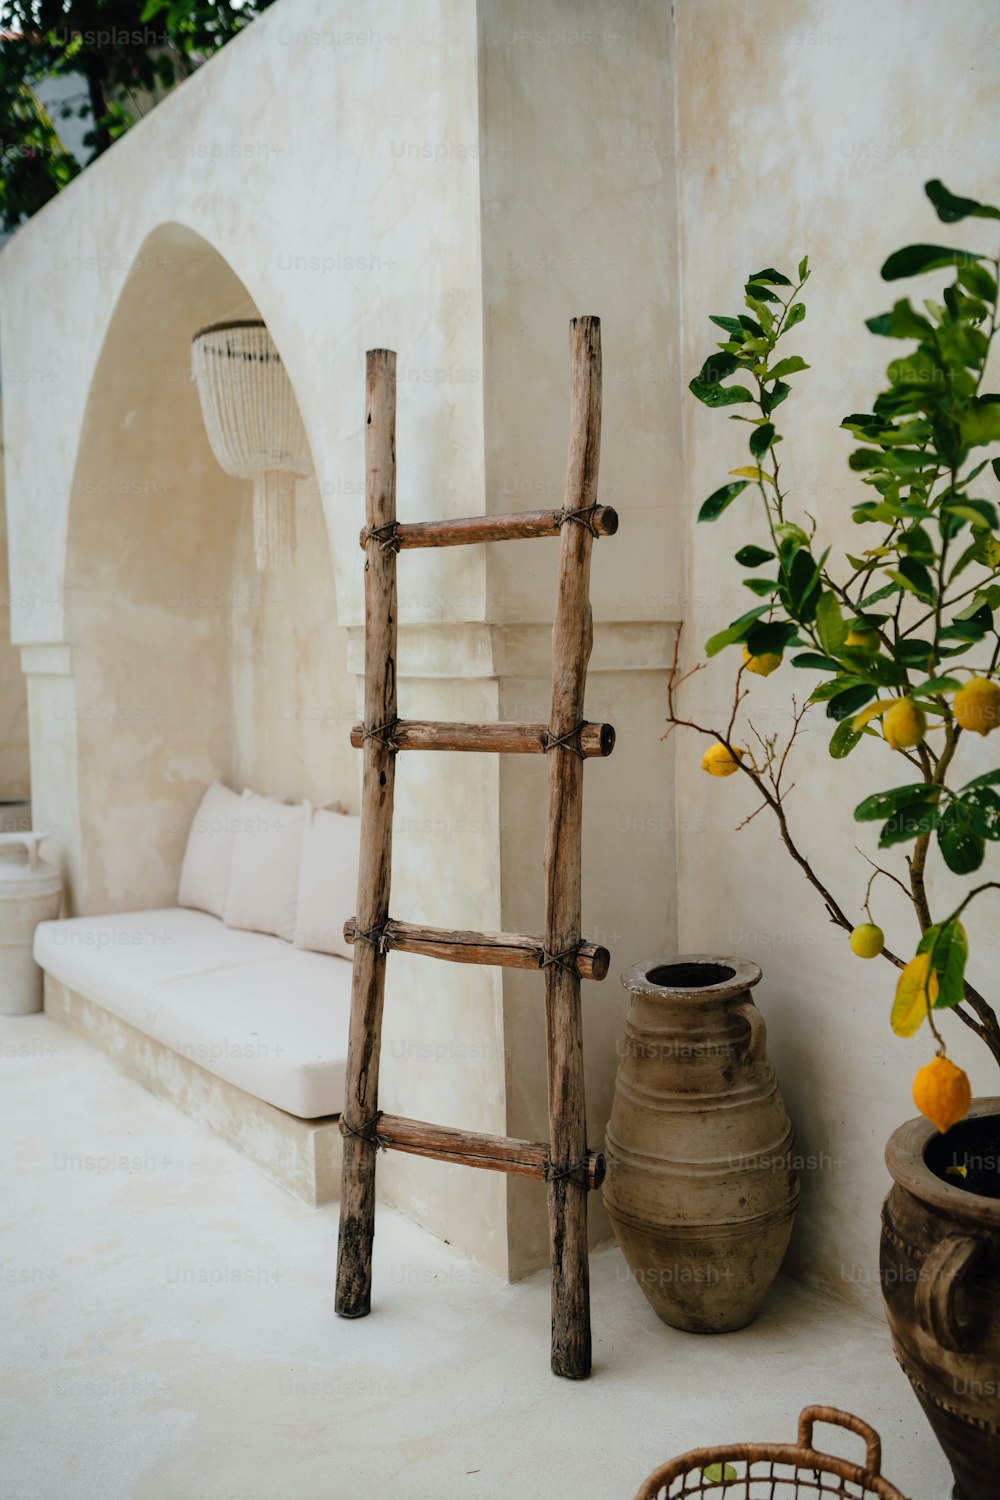 una escalera apoyada contra una pared junto a una planta en maceta